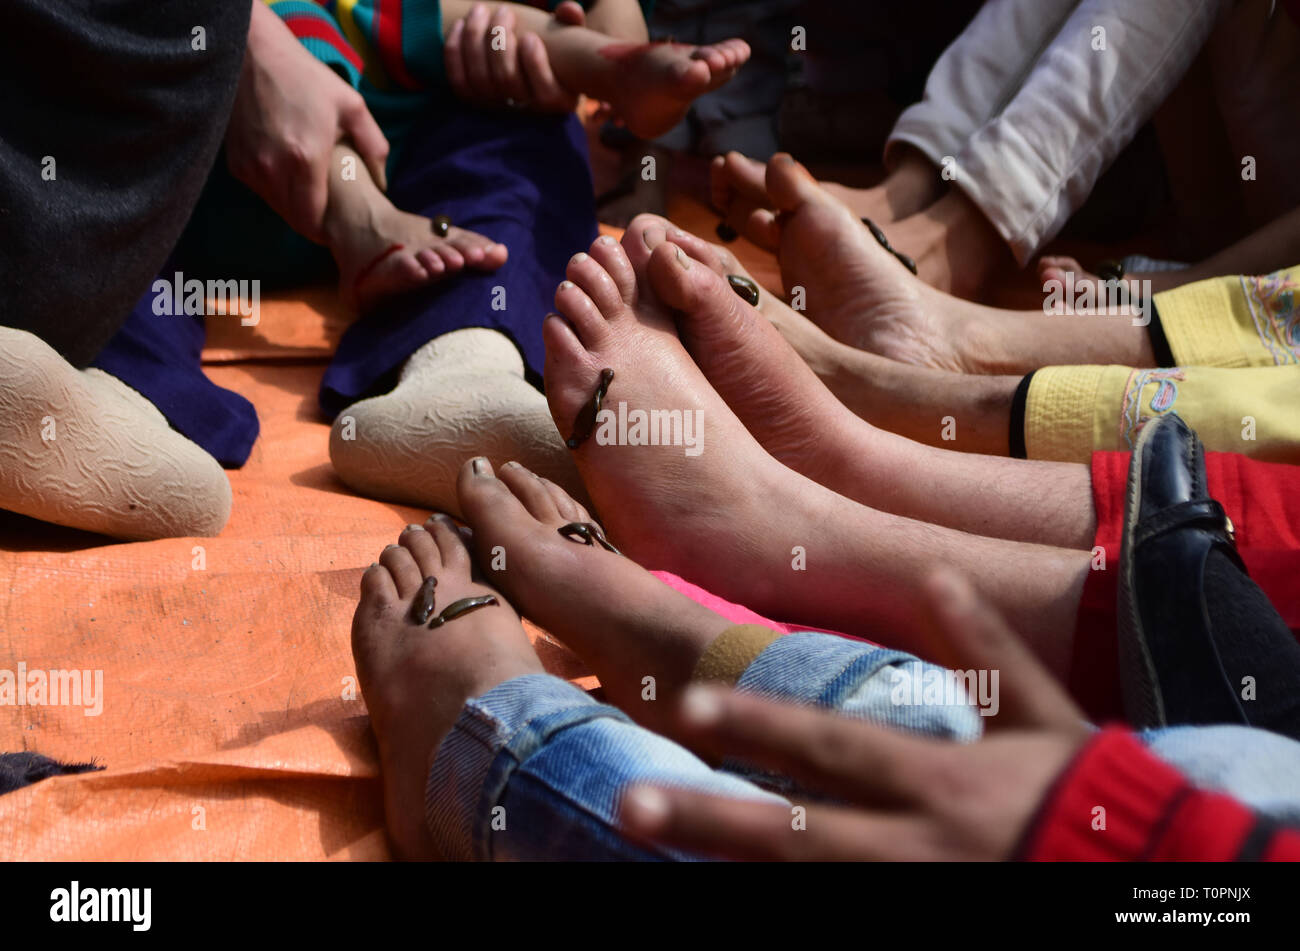 März 21, 2019-kaschmirischen Volkes nehmen Blutegel Behandlung am Dal Lake Srinagar, Indien verwalteten Kaschmir am 21. März 2019. Die traditionelle Behandlung wird jedes Jahr am Tag der Nauroz Tag (Iranische auf das Neue Jahr gehalten). Die Heiler mit Blutegel das Unreine Blut von Patienten, die Haut, kalt oder Frost Krankheiten zu saugen. (Bild: © Muzamil Mattoo/IMAGESLIVE über ZUMA Draht) Stockfoto